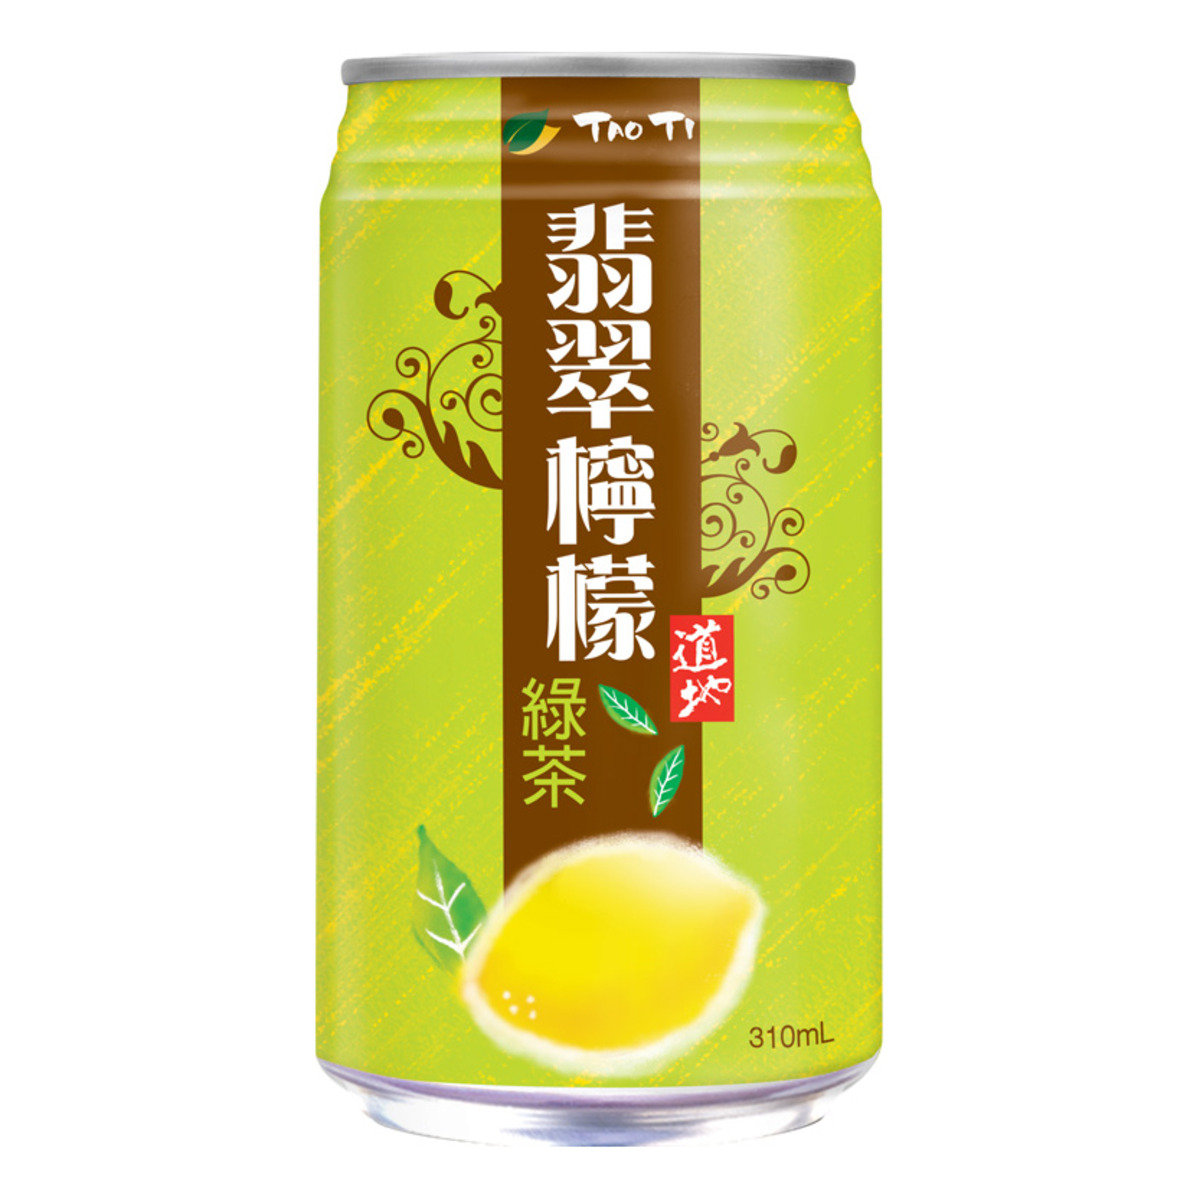 翡翠檸檬綠茶罐裝